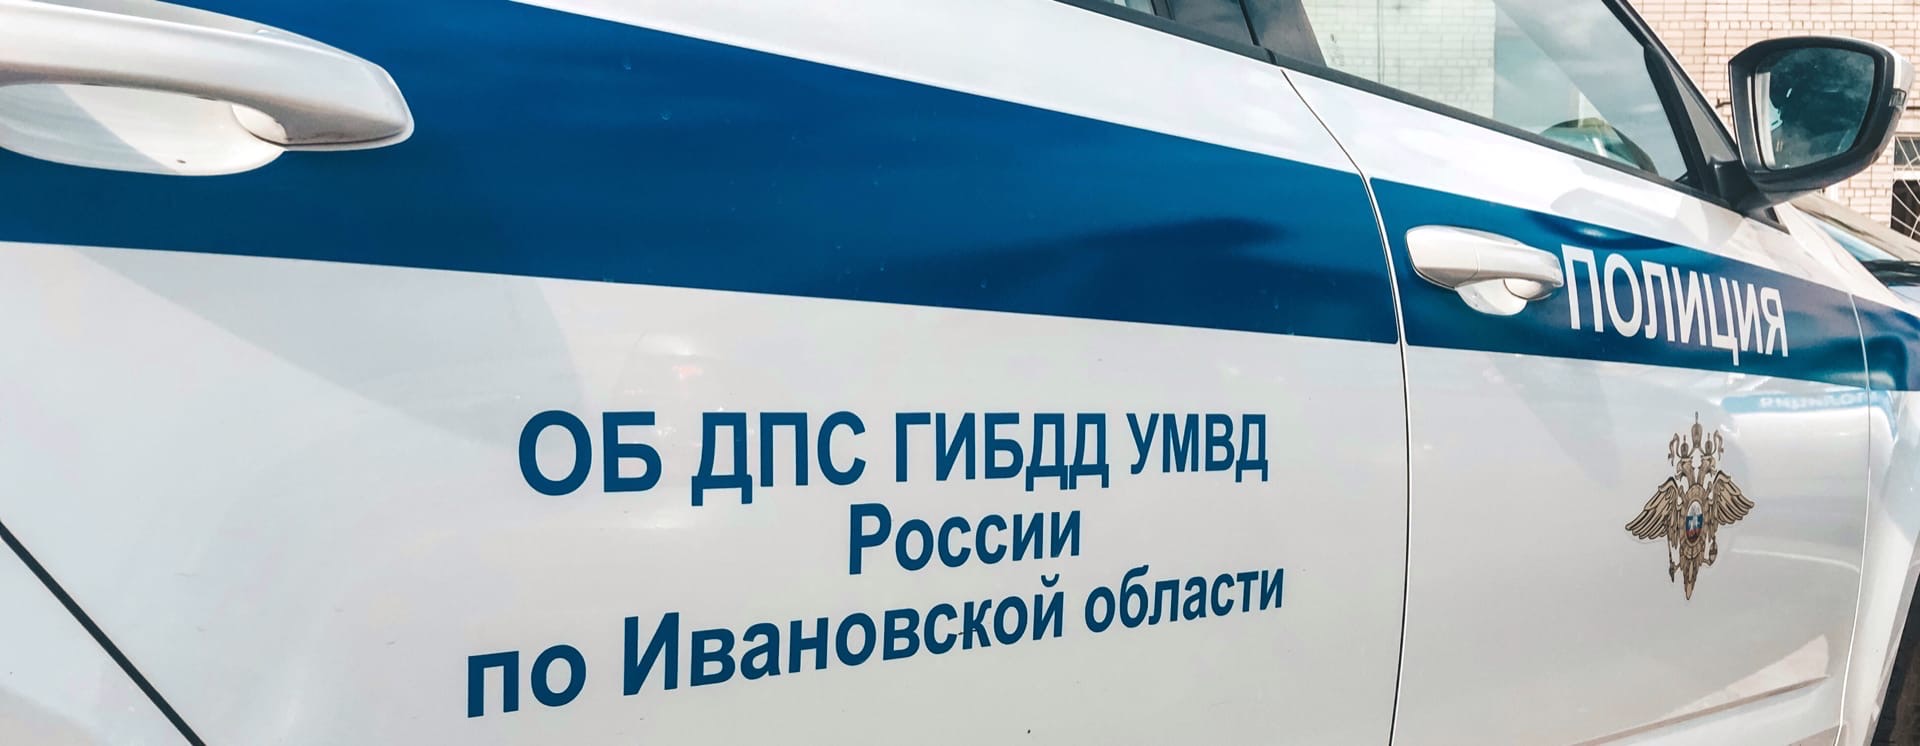 В Иванове произошло ДТП с троллейбусом